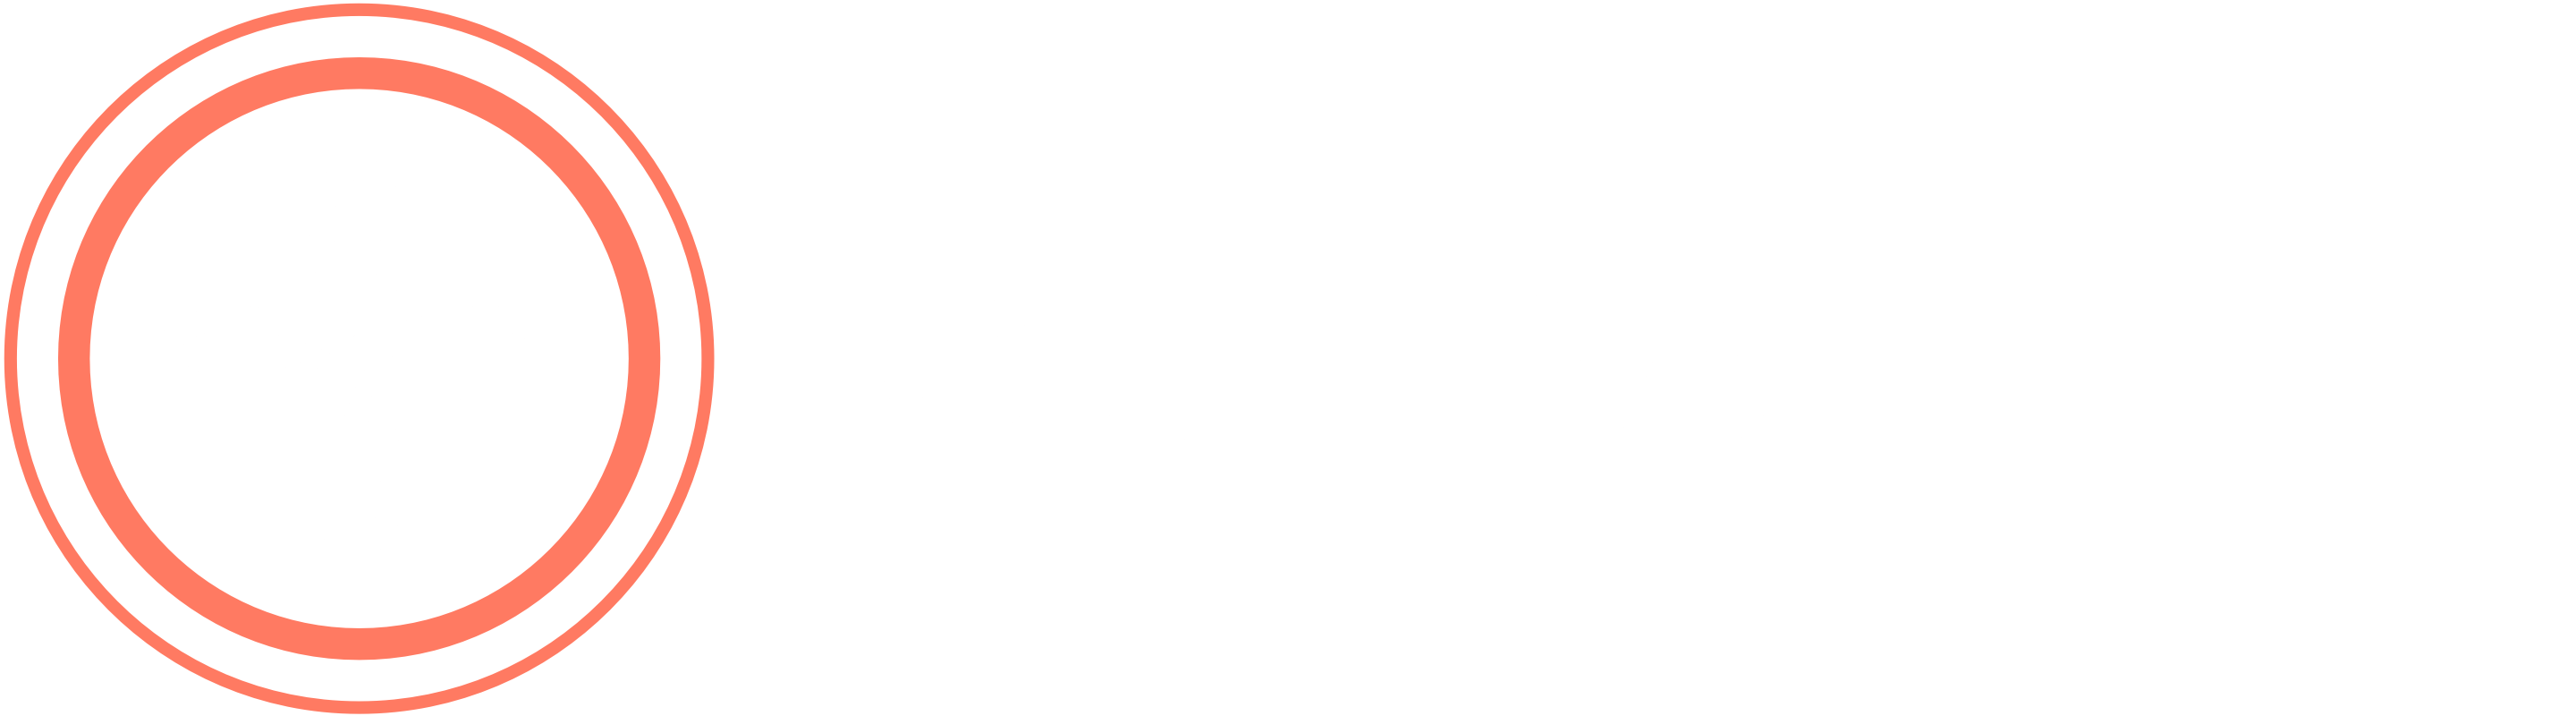 Outpatient Logo - Outpatient the Outpatient App